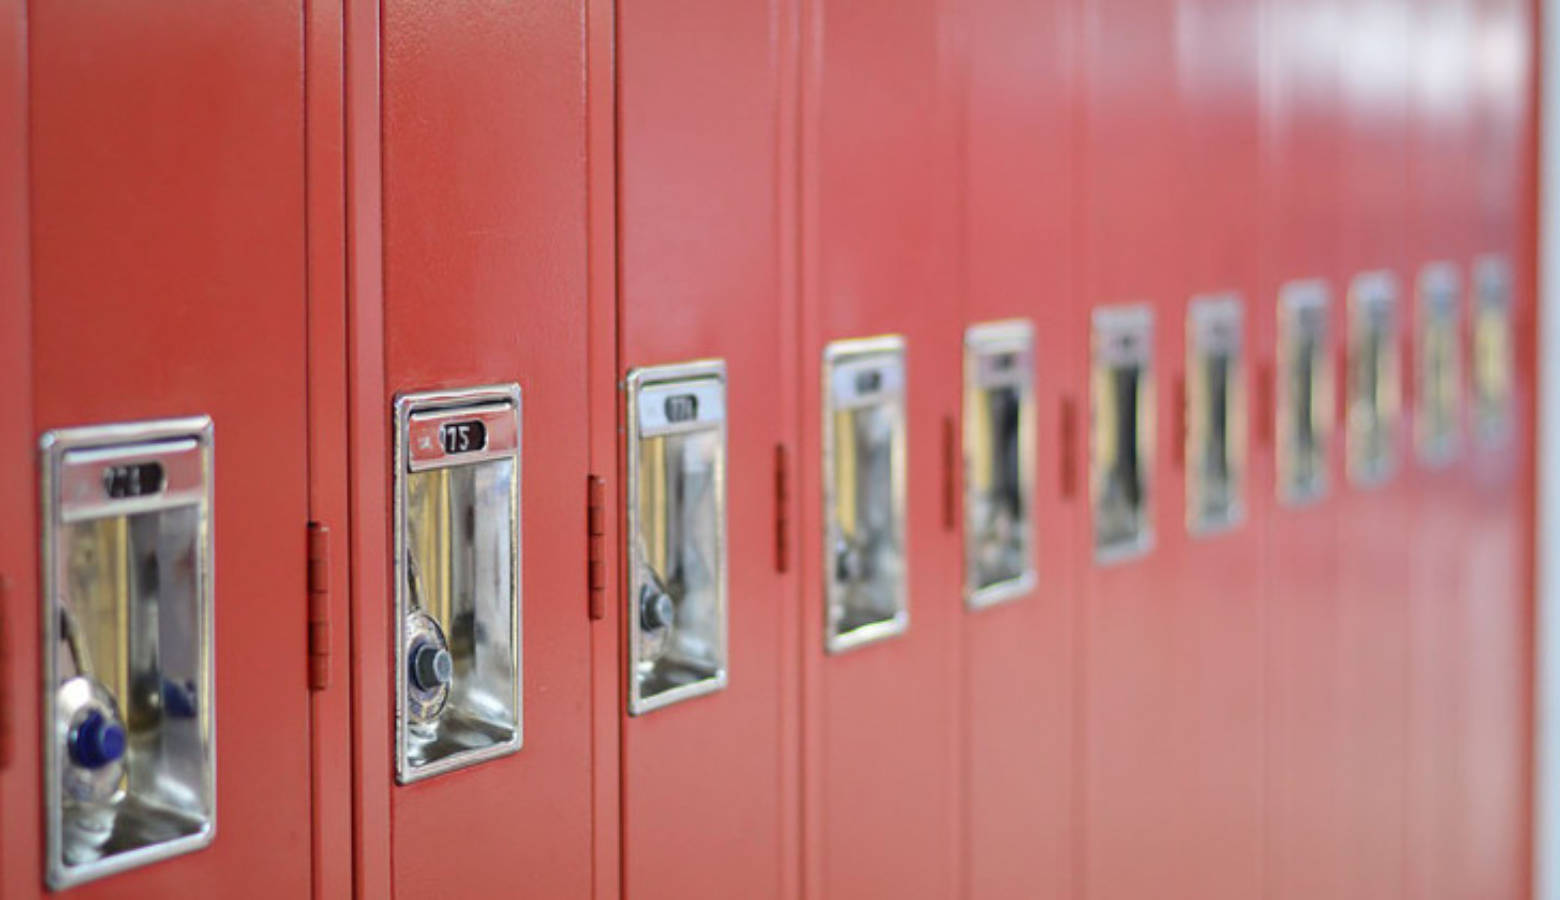 Lockers in a school.